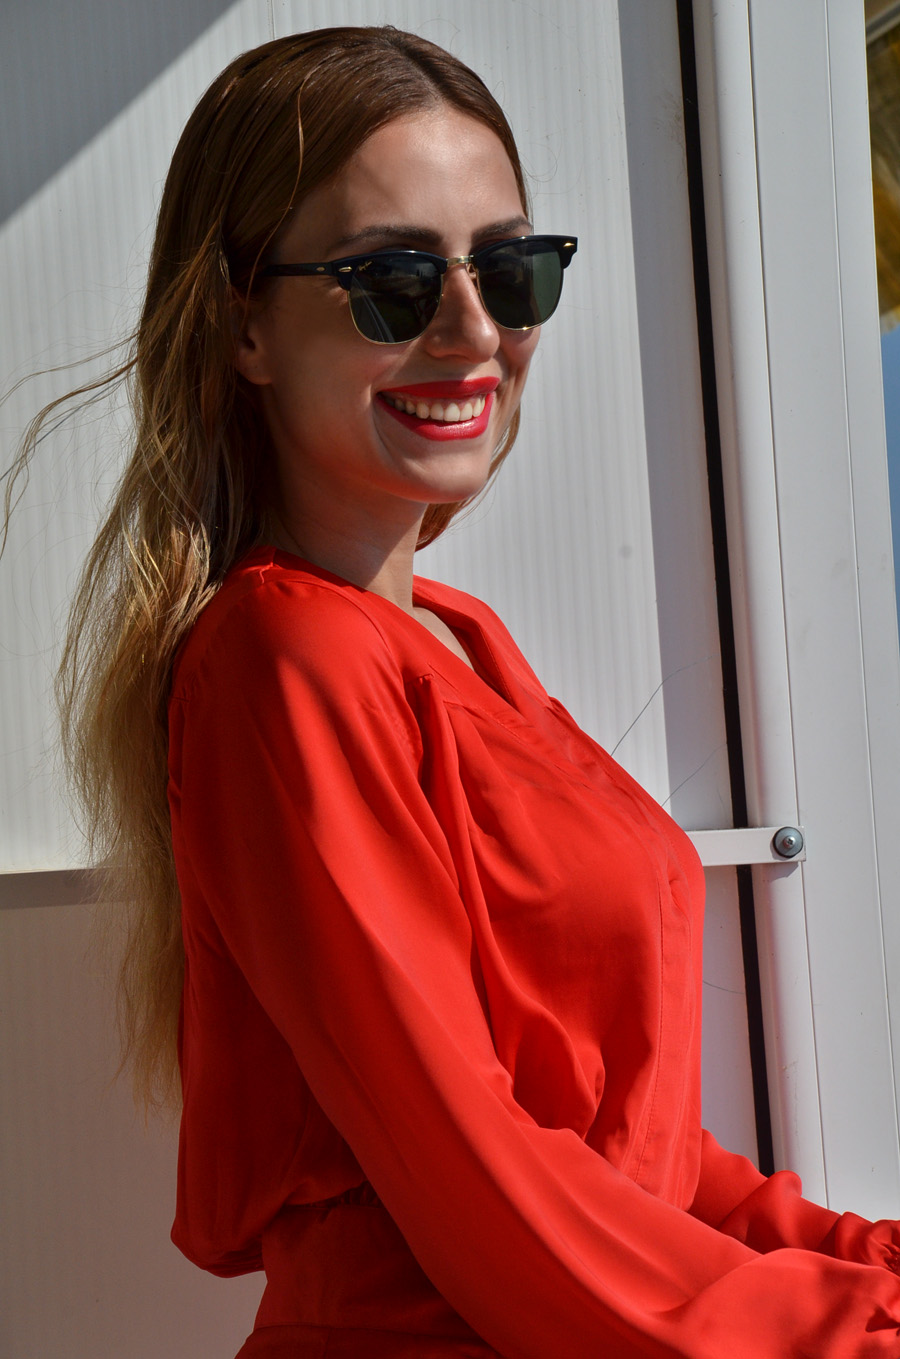 Red Romper / Stasha Fashion Blog by Anastasija